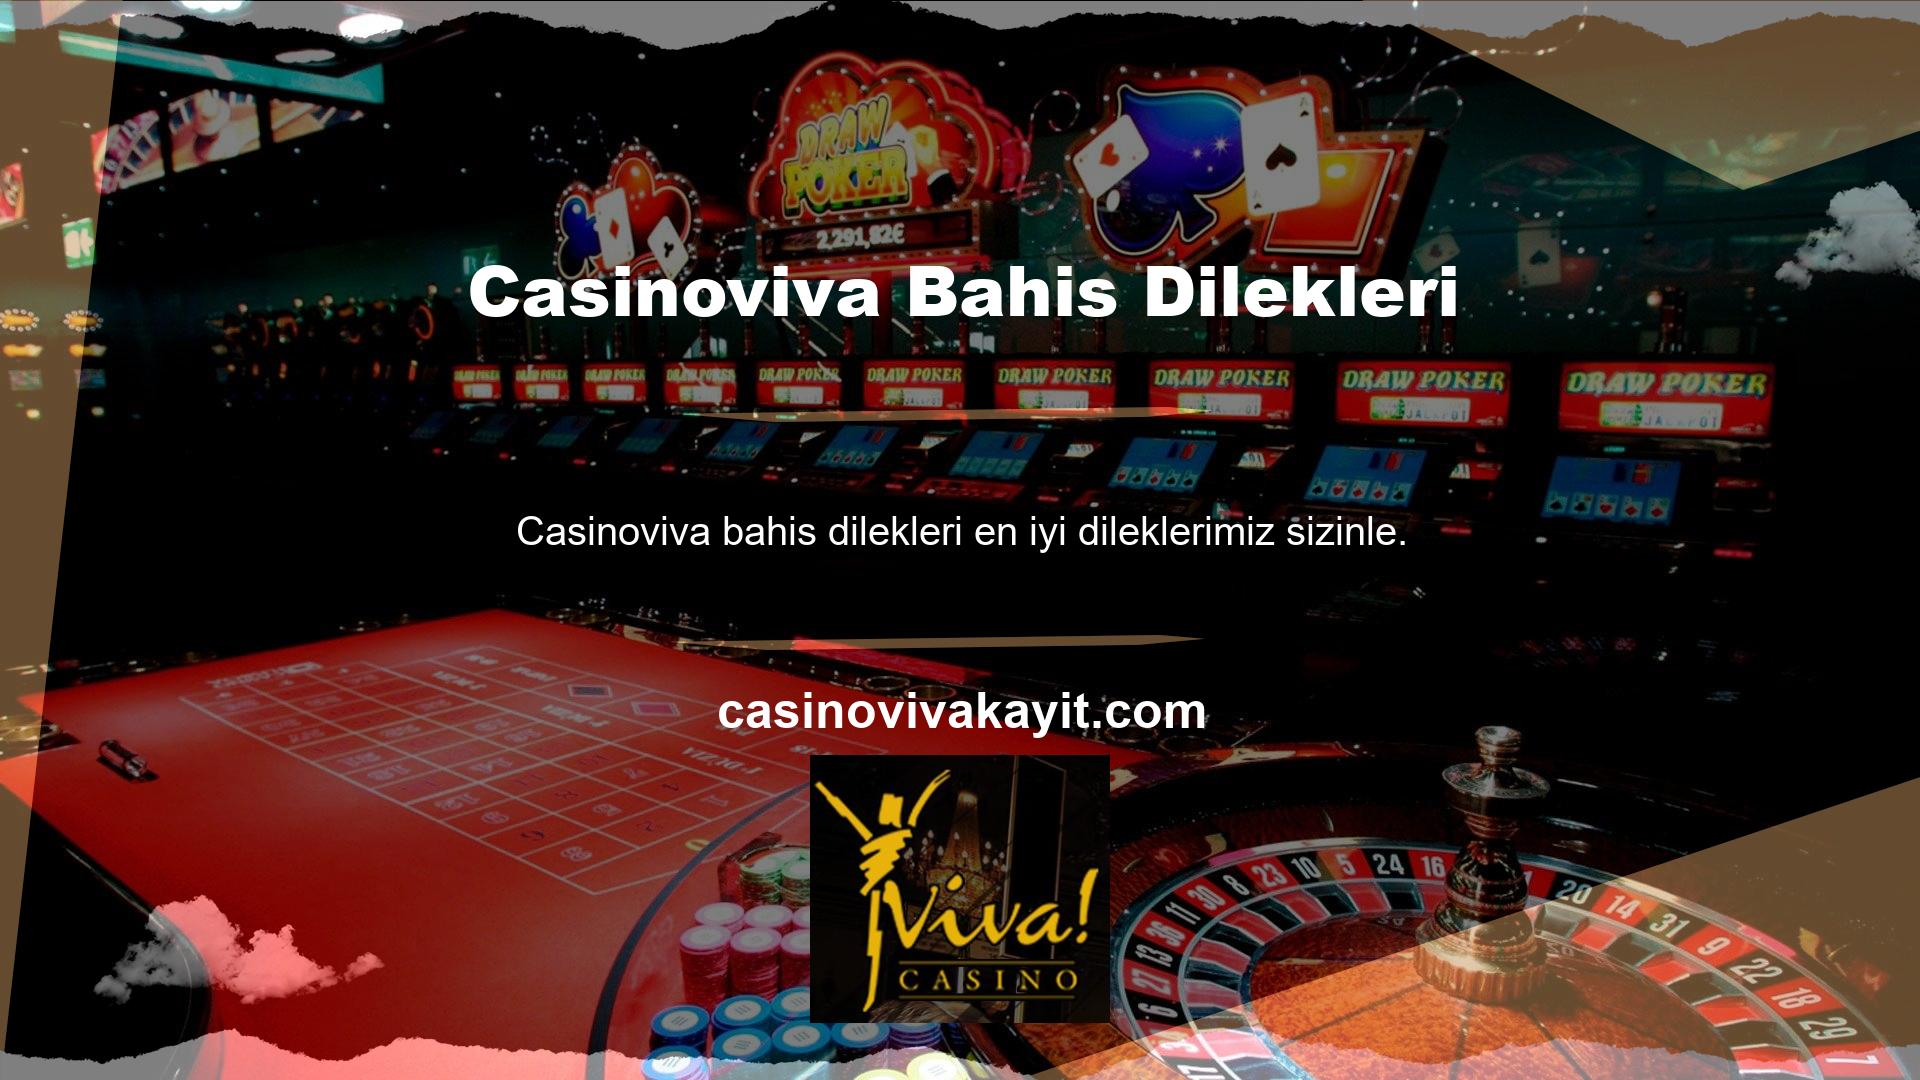 Oyun hizmetleri ve canlı destek sunma lisansına sahip olan Casinoviva, çevrimiçi yardım sunmaktadır